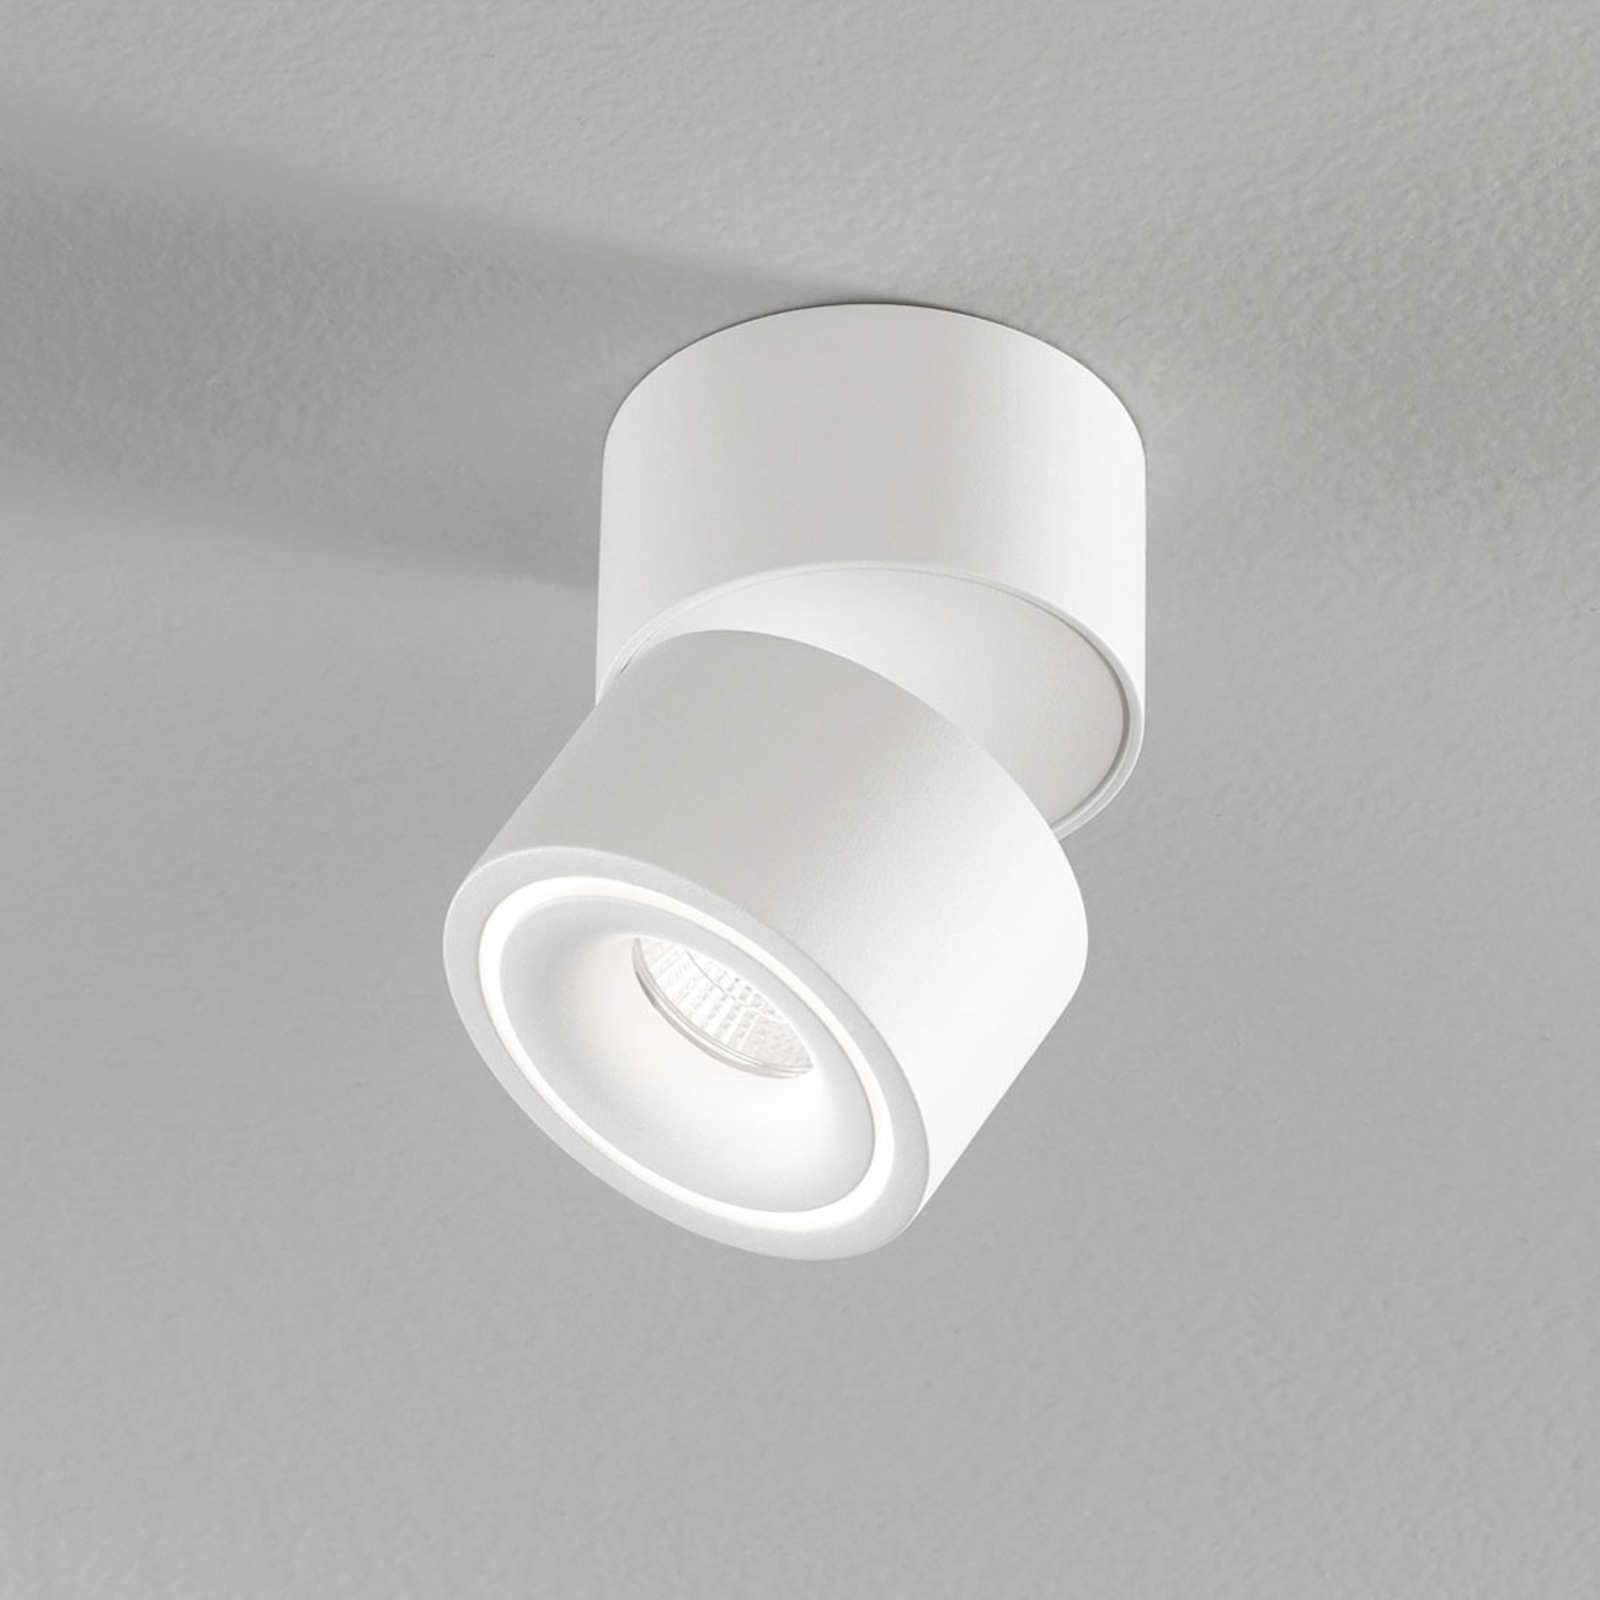 Egger Clippo S spot LED soffitto, bianco